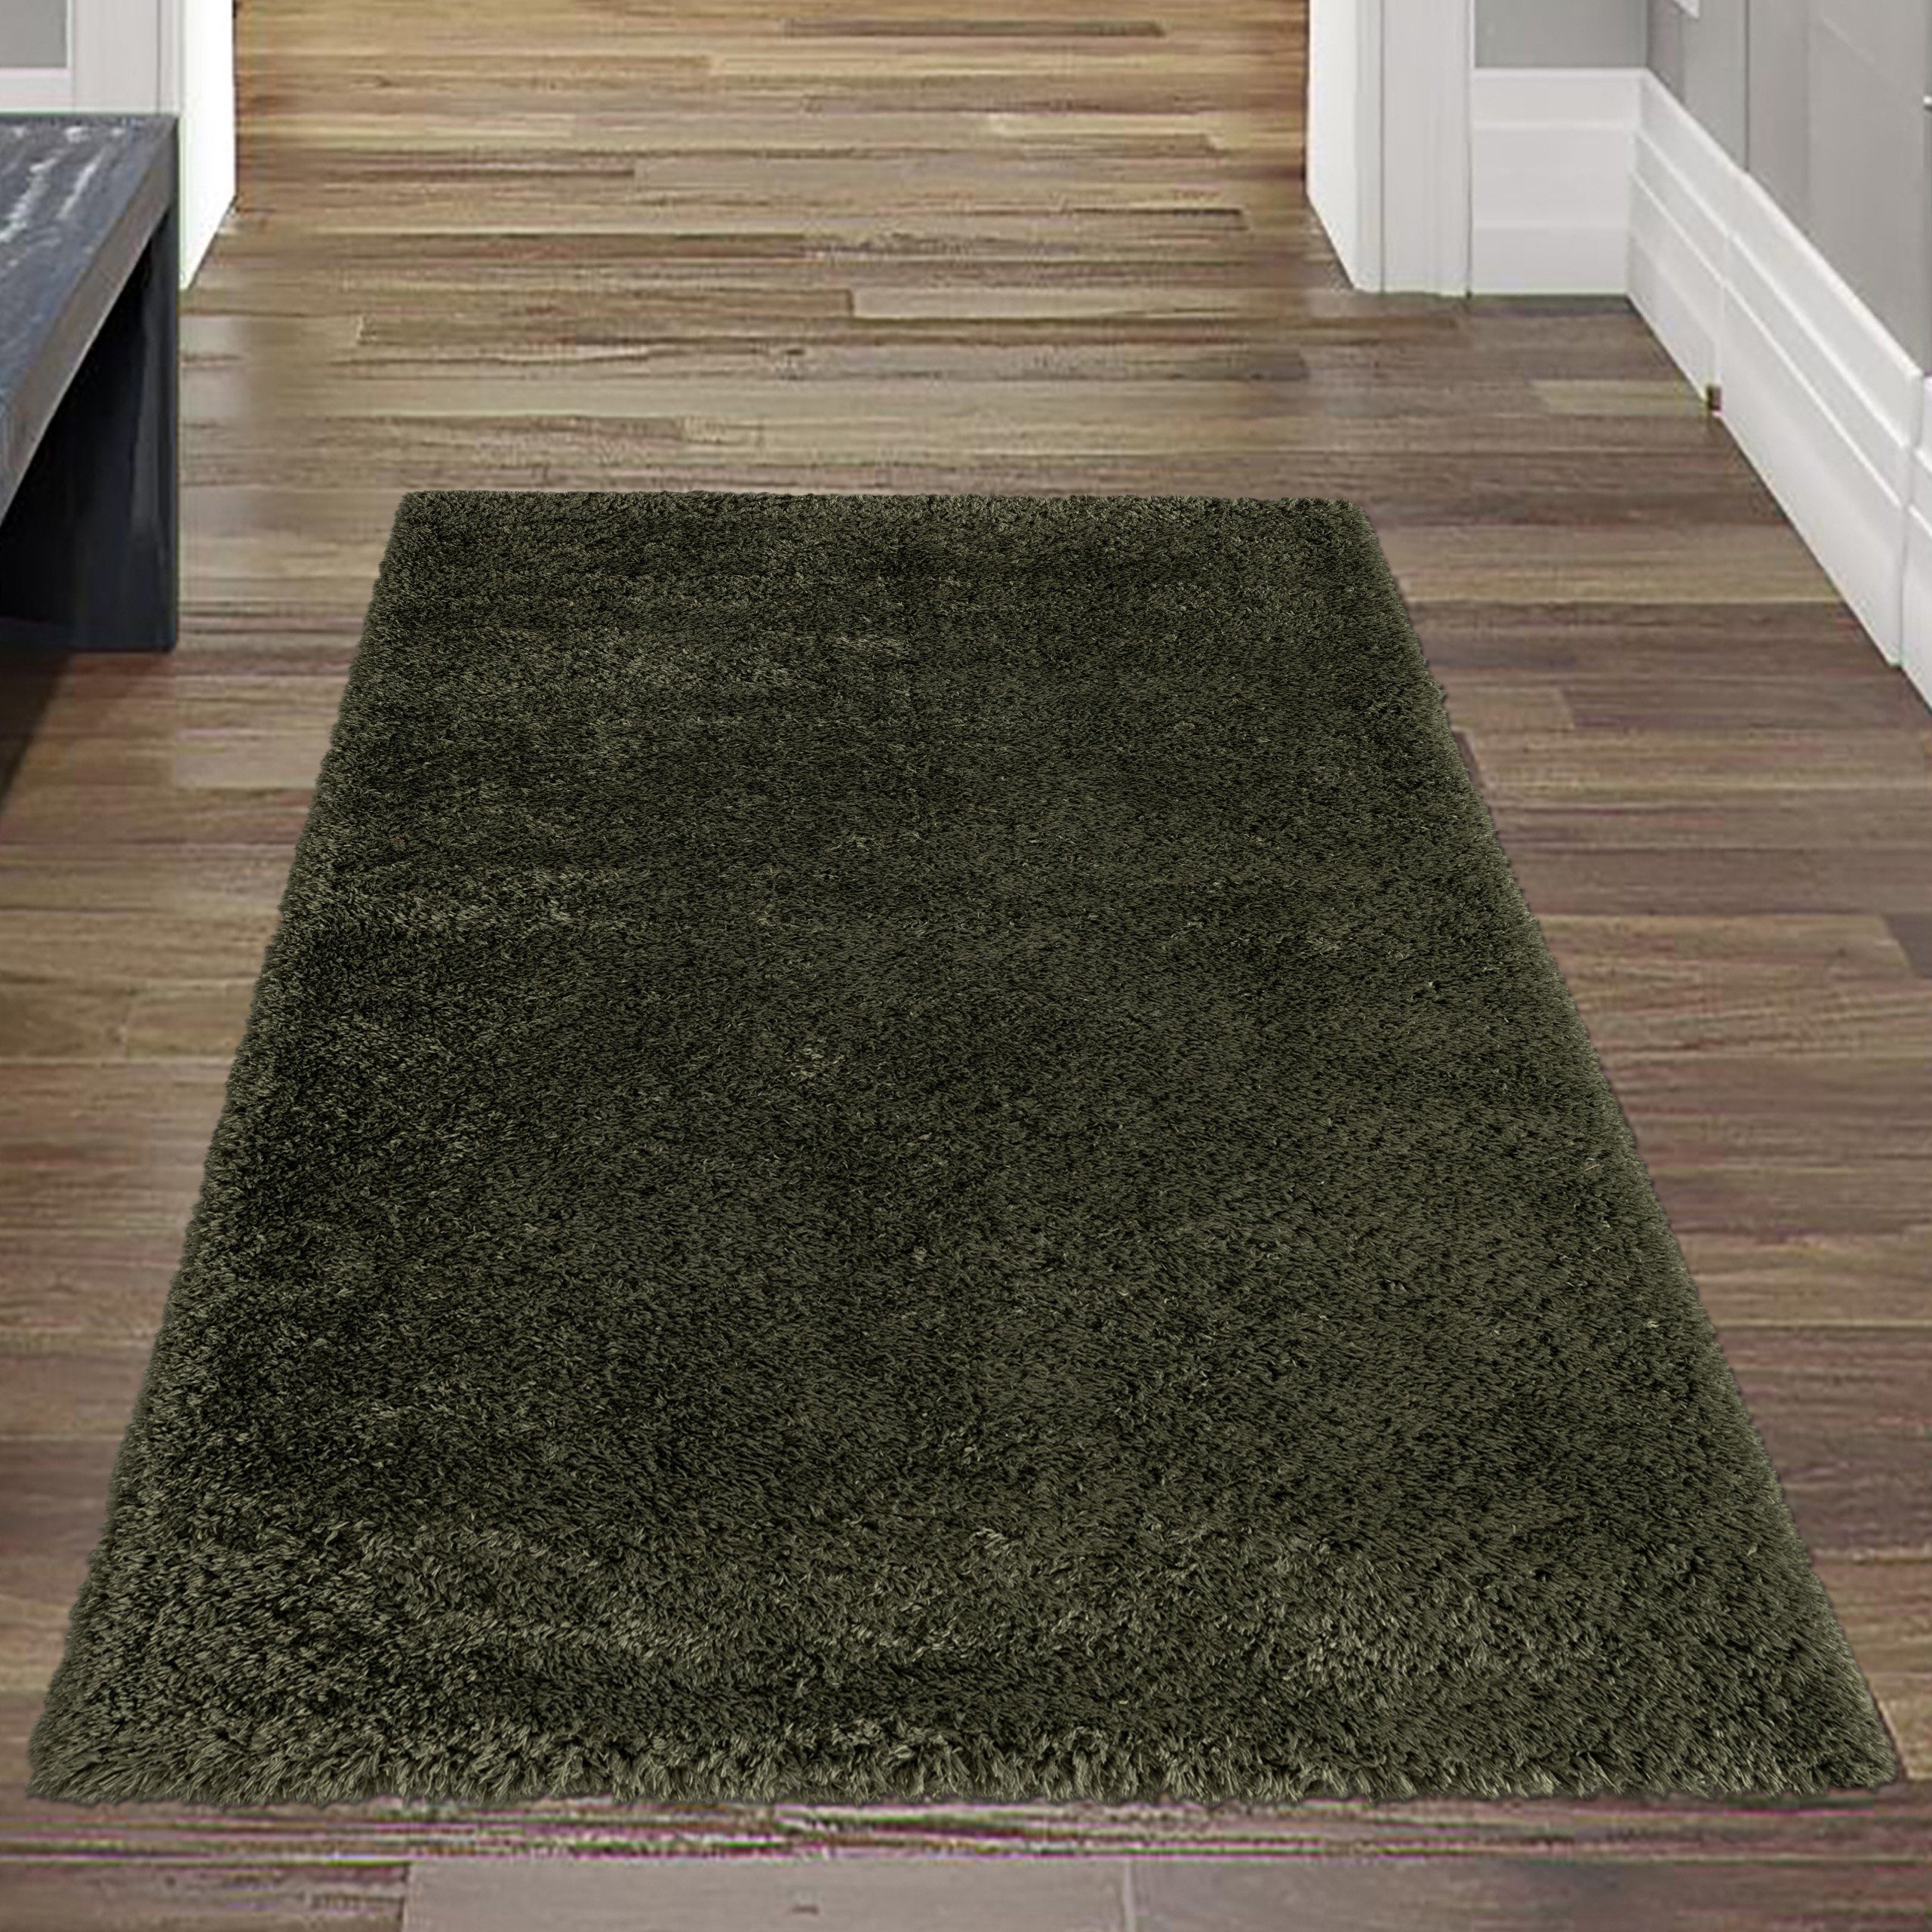 rechteckig, grün, Recycle Hautfreundlich, & Allergiker Für umweltschonend Teppich Wohnzimmer, geeignet, Umweltfreundlicher Nachhaltig Teppich-Traum, Flauschteppich